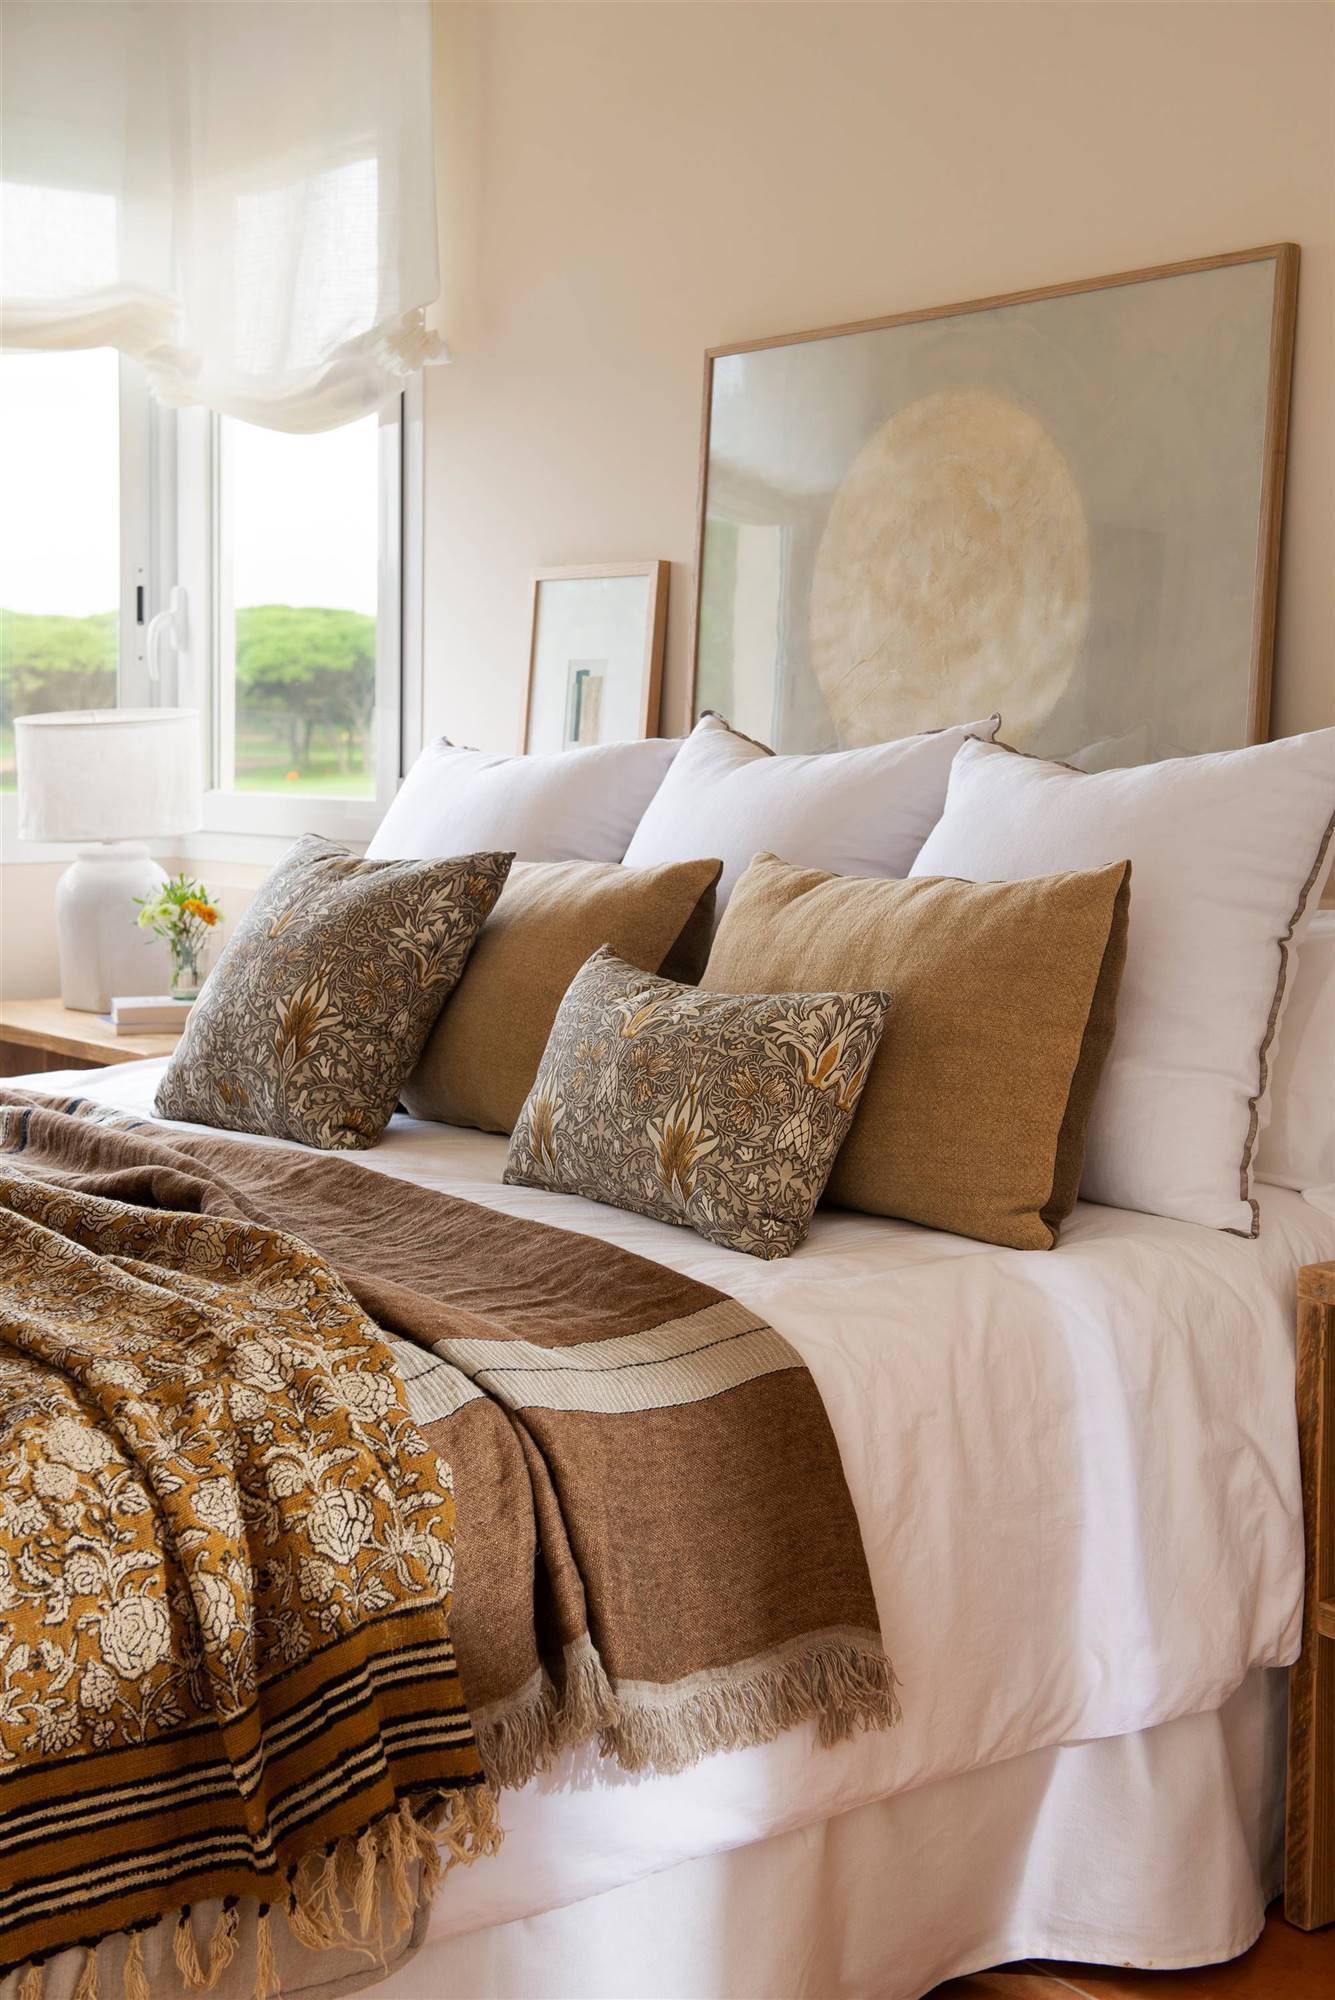 Dormitorio con cojines blancos de lino y estampados.